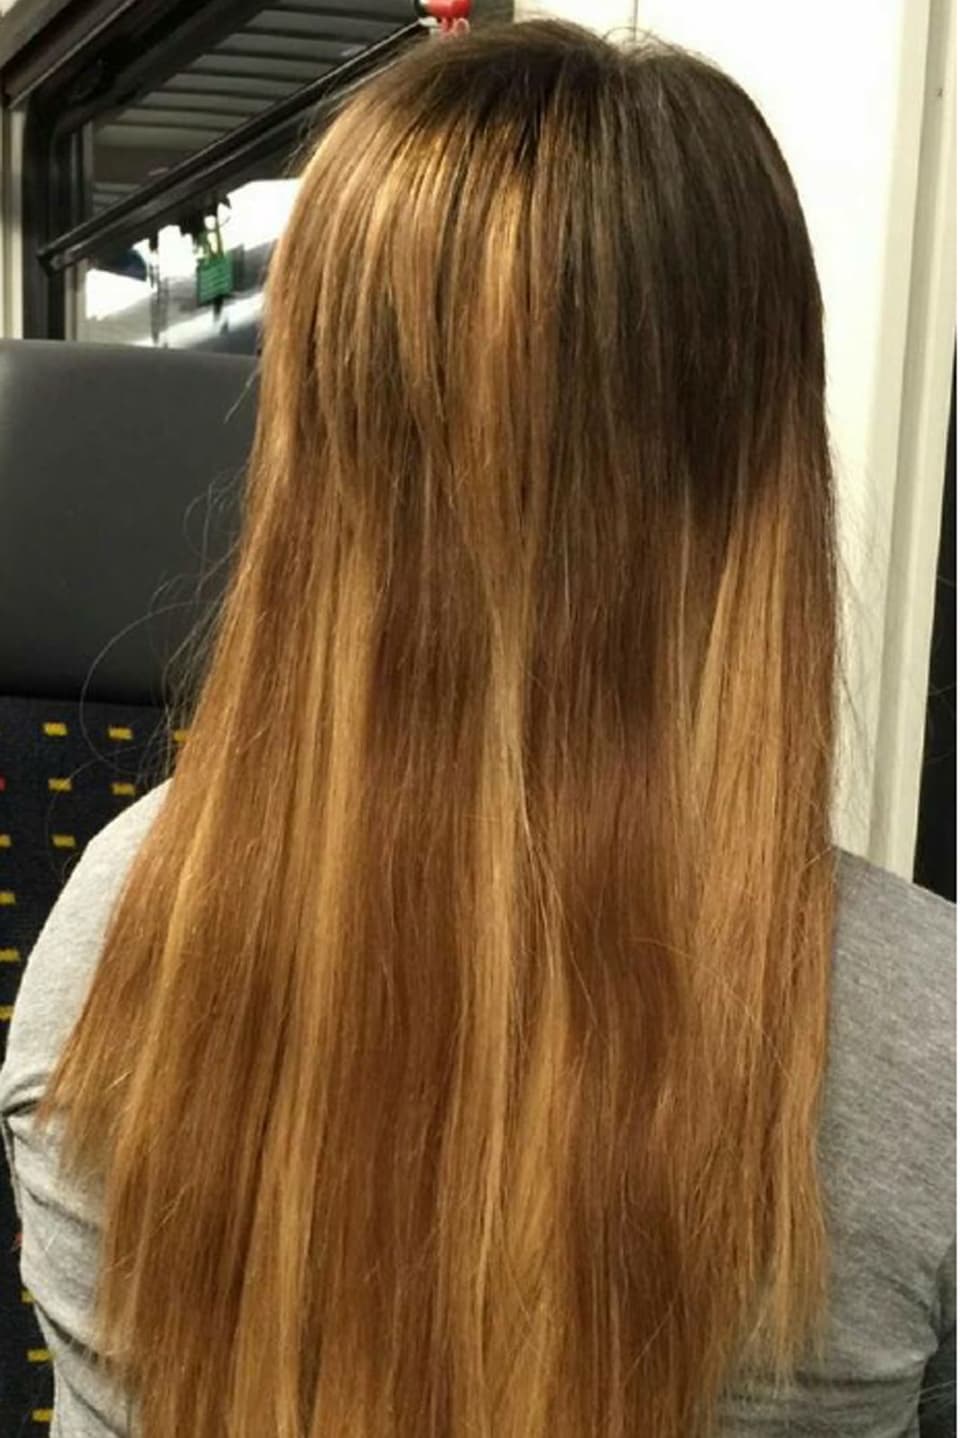 Eine Frau mit langen Haaren unterschiedlicher Farbe.